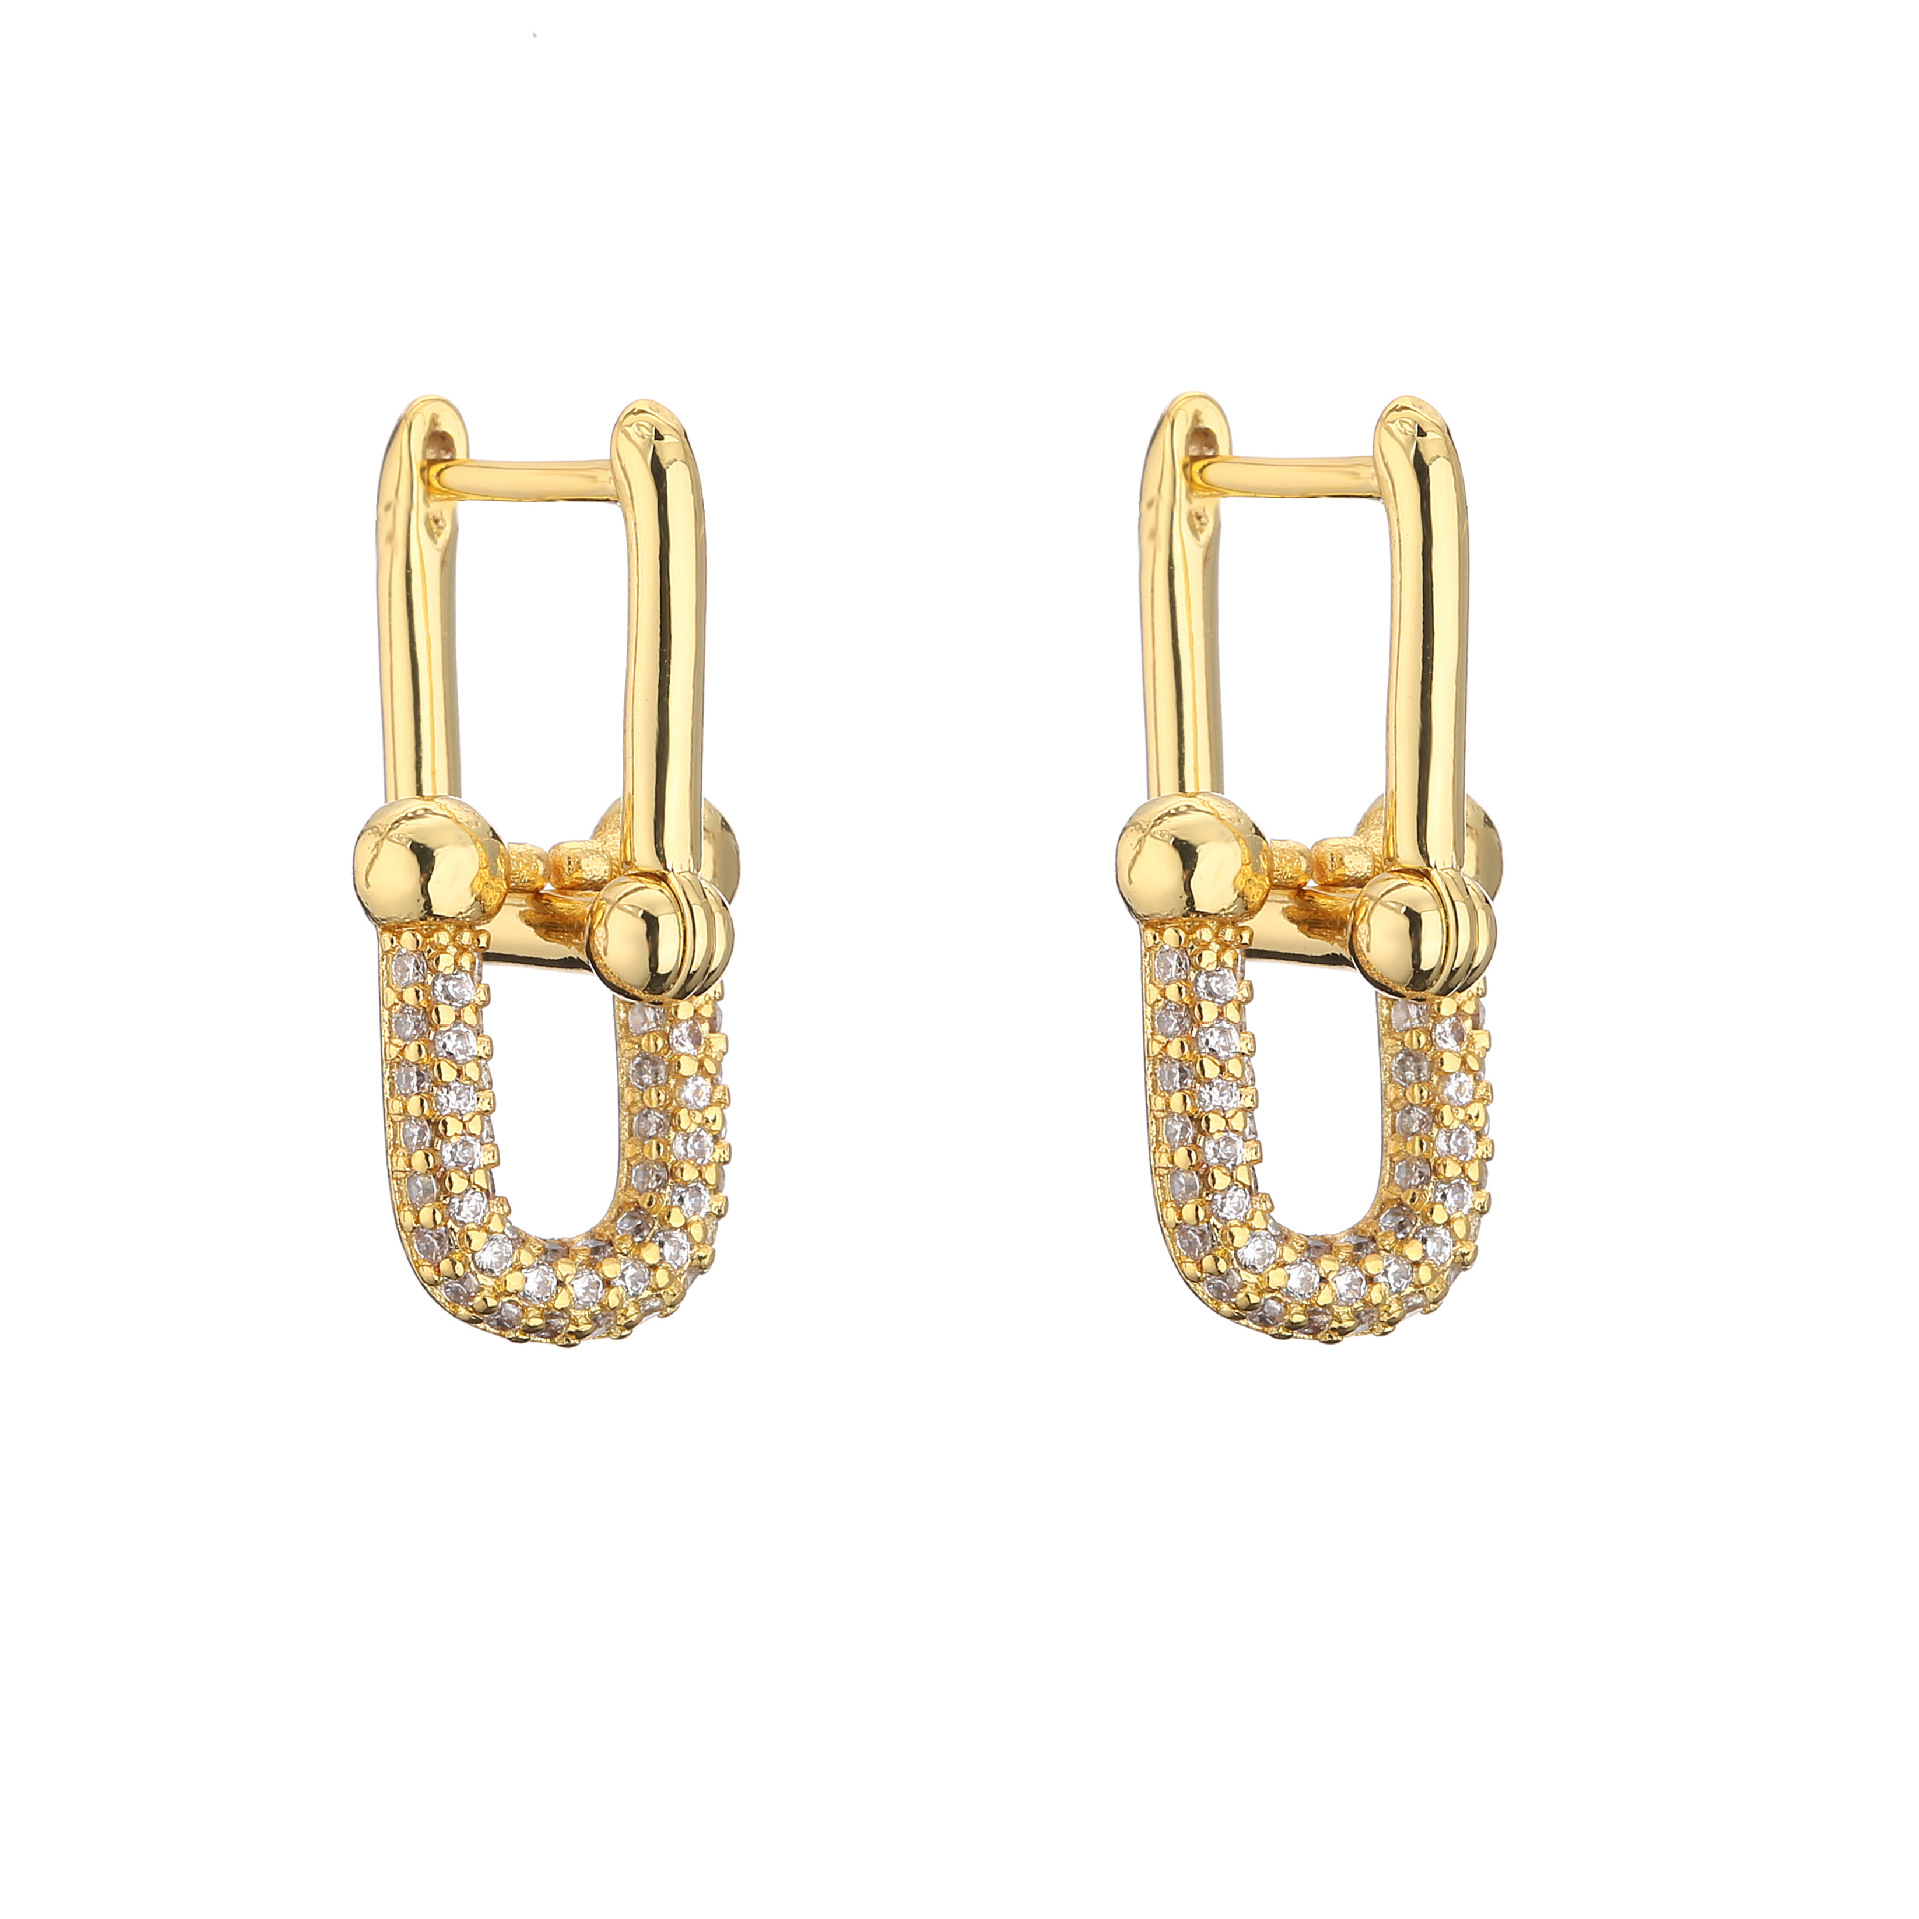 4:1 pair of earrings